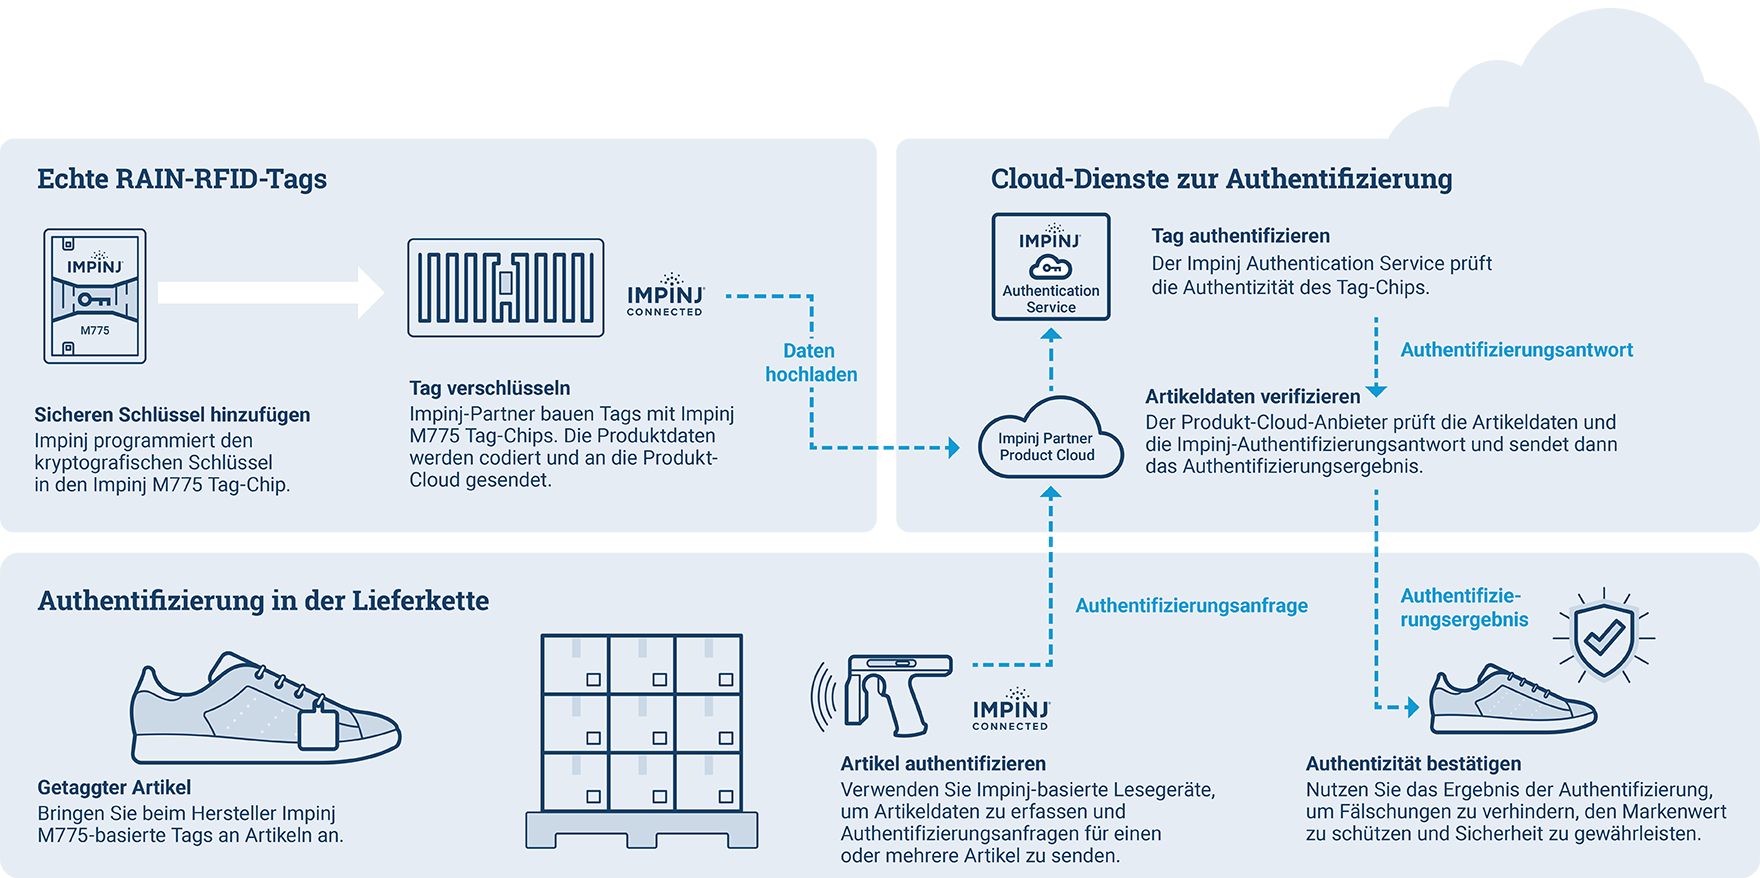 Infografik zur Authentifizierung in der Lieferkette mit Impinj RAIN-RFID-Tags und Cloud-Services zur Sicherstellung der Produkt-Echtheit